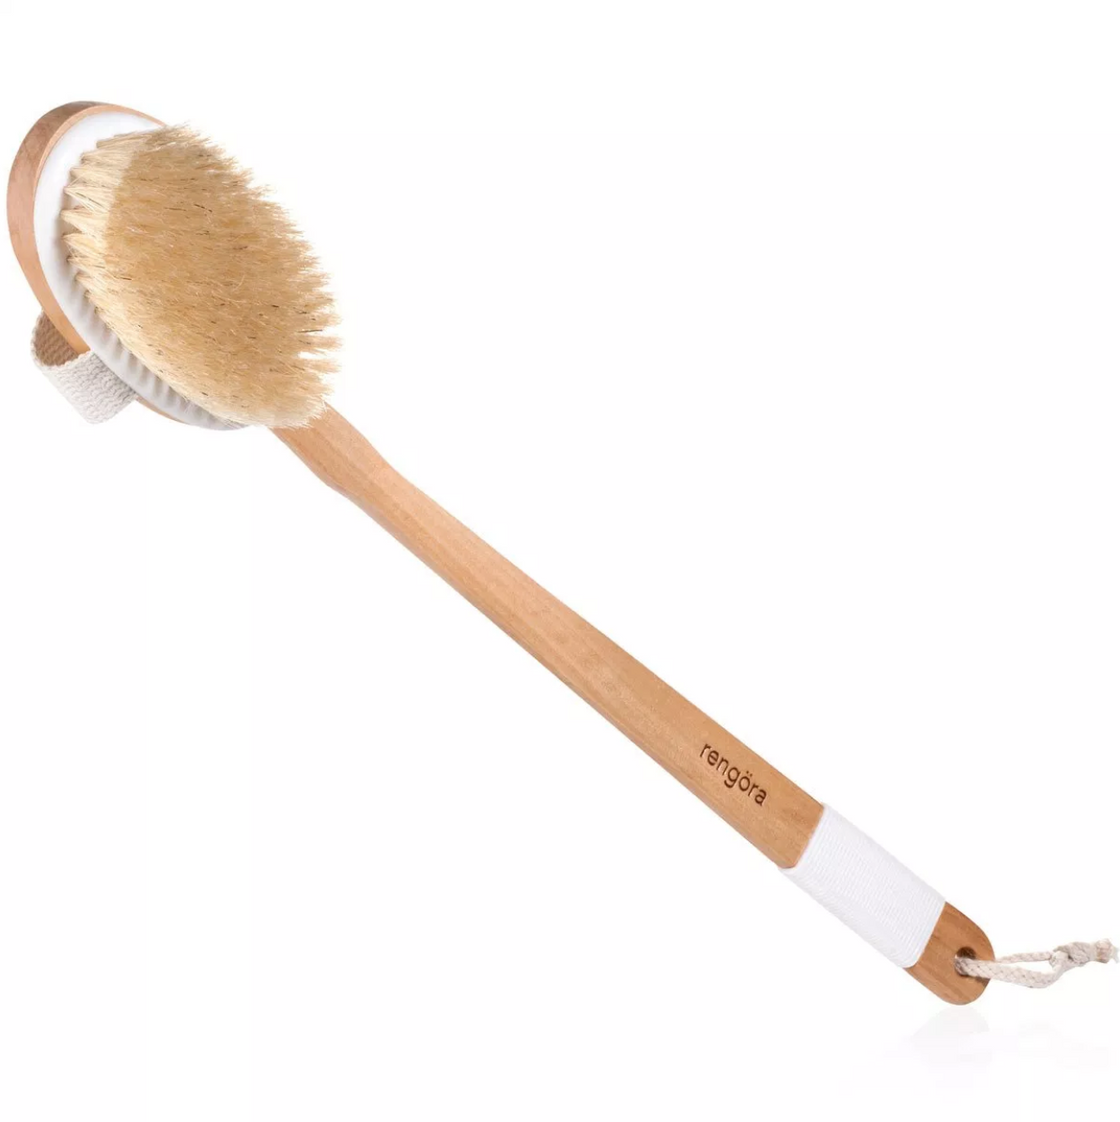 rengora's all natural boar bristle bath brush